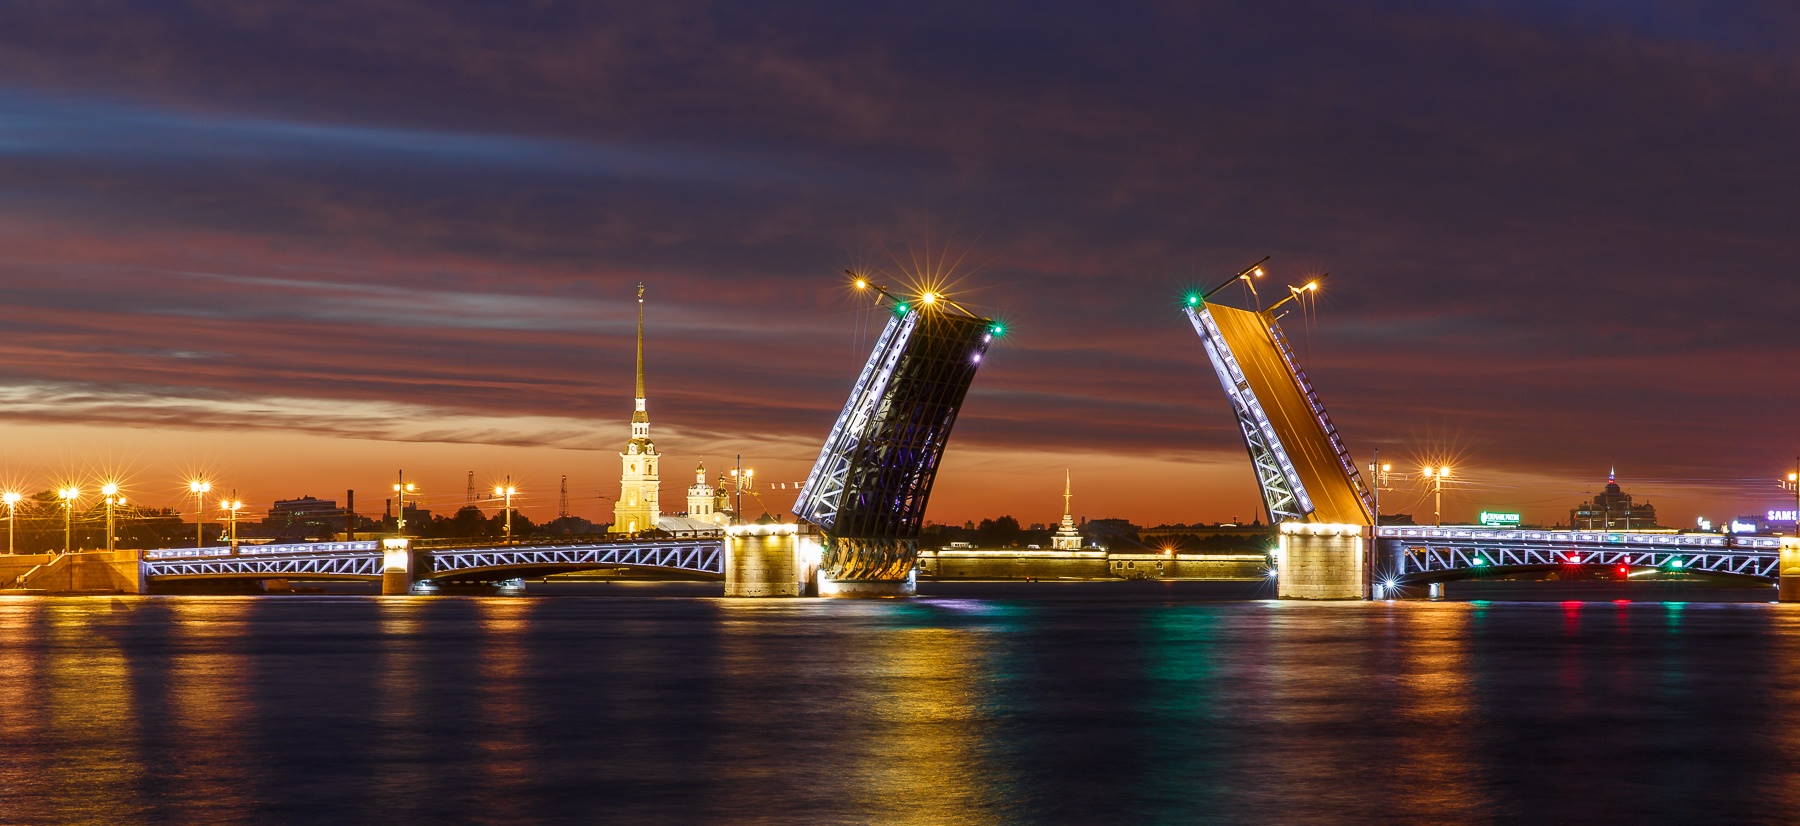 Дворцовый мост Питер - История